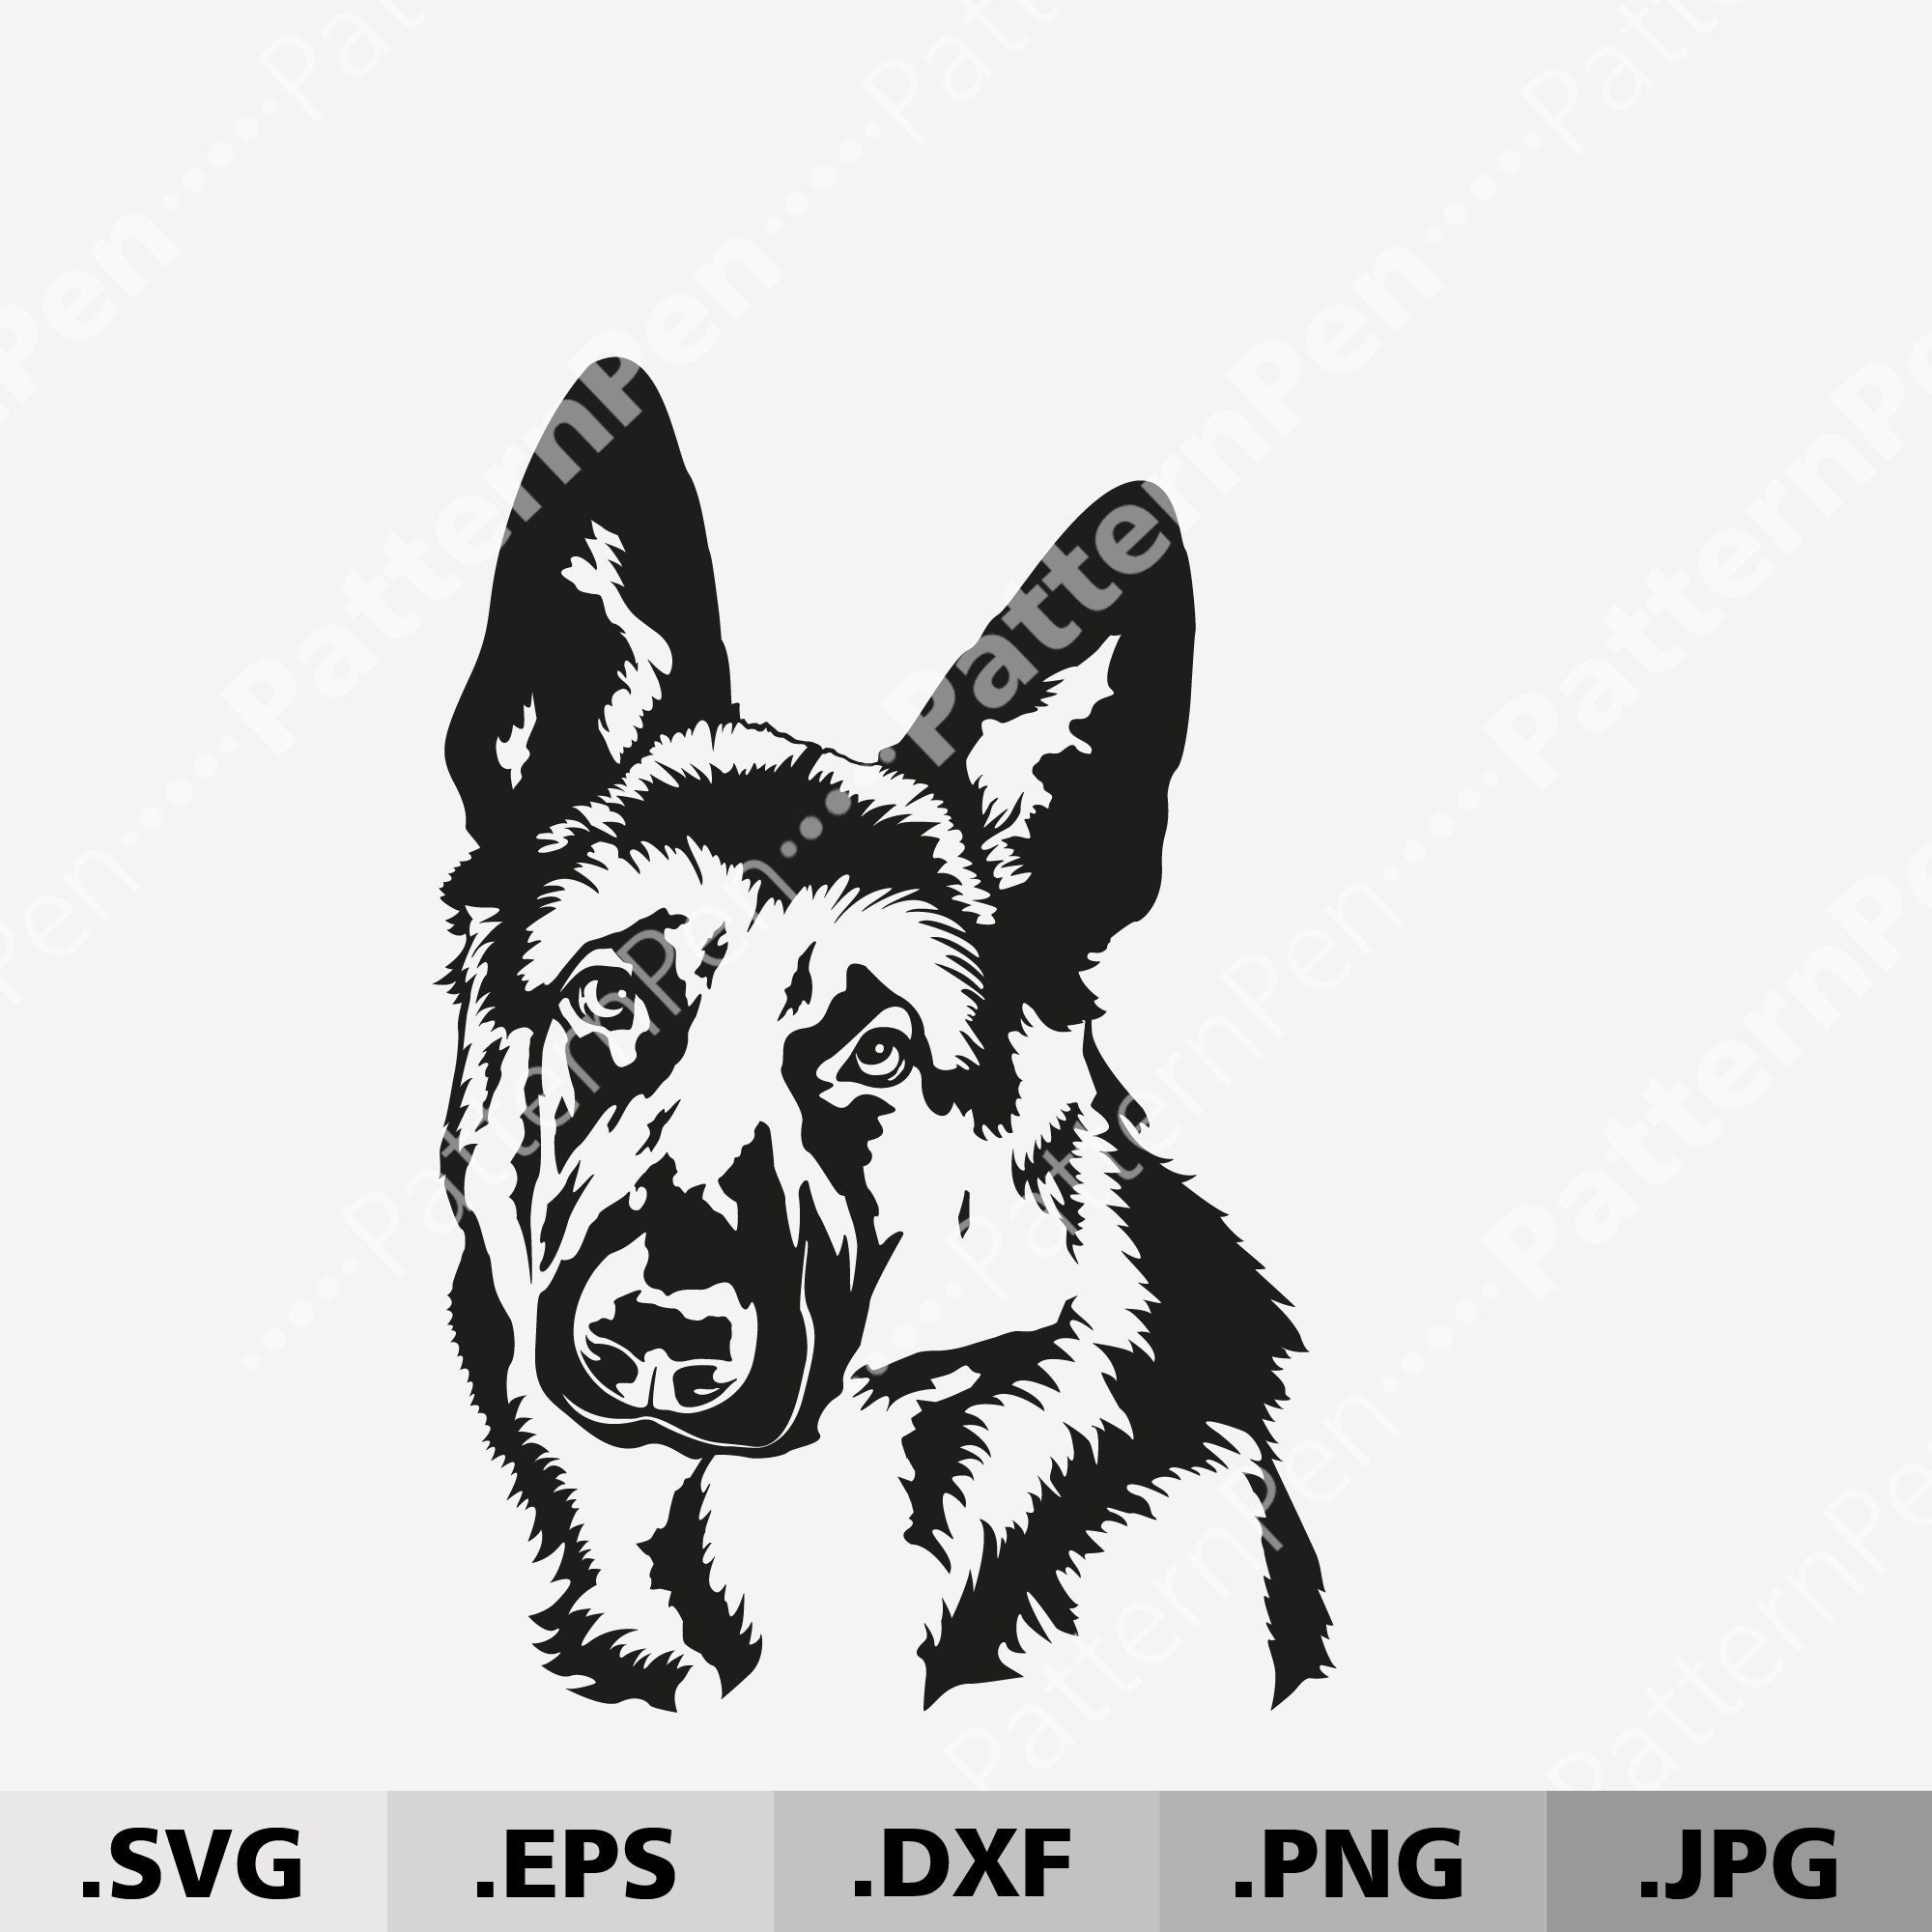 German Shepherd Dog SVG DXF Digital Vector Download Files for | Etsy